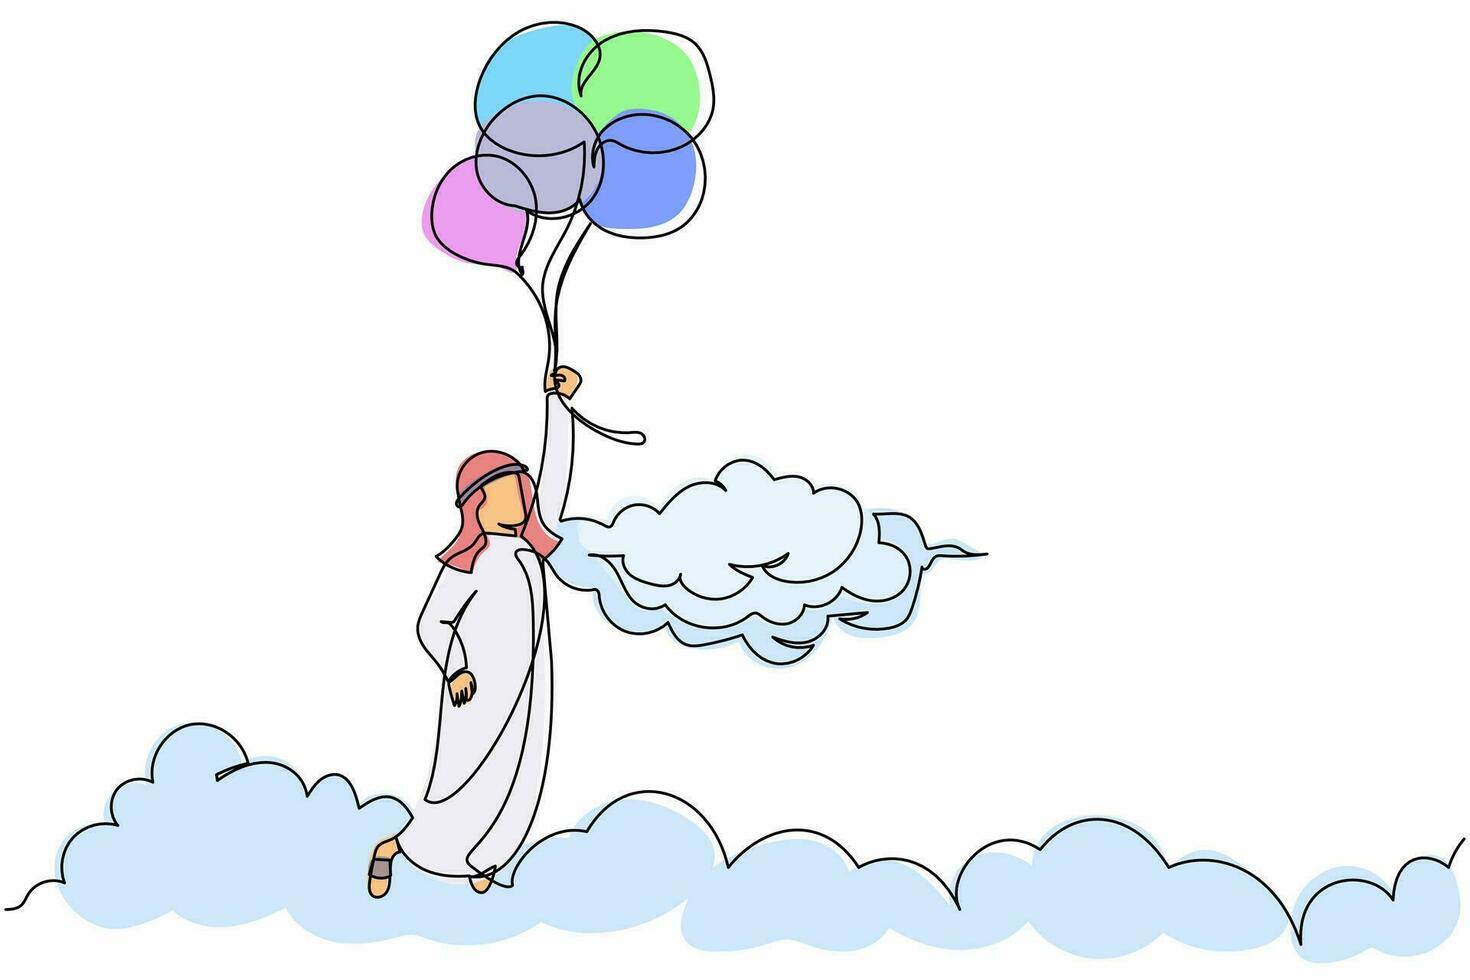 enda kontinuerlig linje ritning arabisk affärsman flyger med ballong genom molnet. medarbetare når mål, mål, hitta lösning. finansiell frihet. en rad rita grafisk design vektorillustration vektor